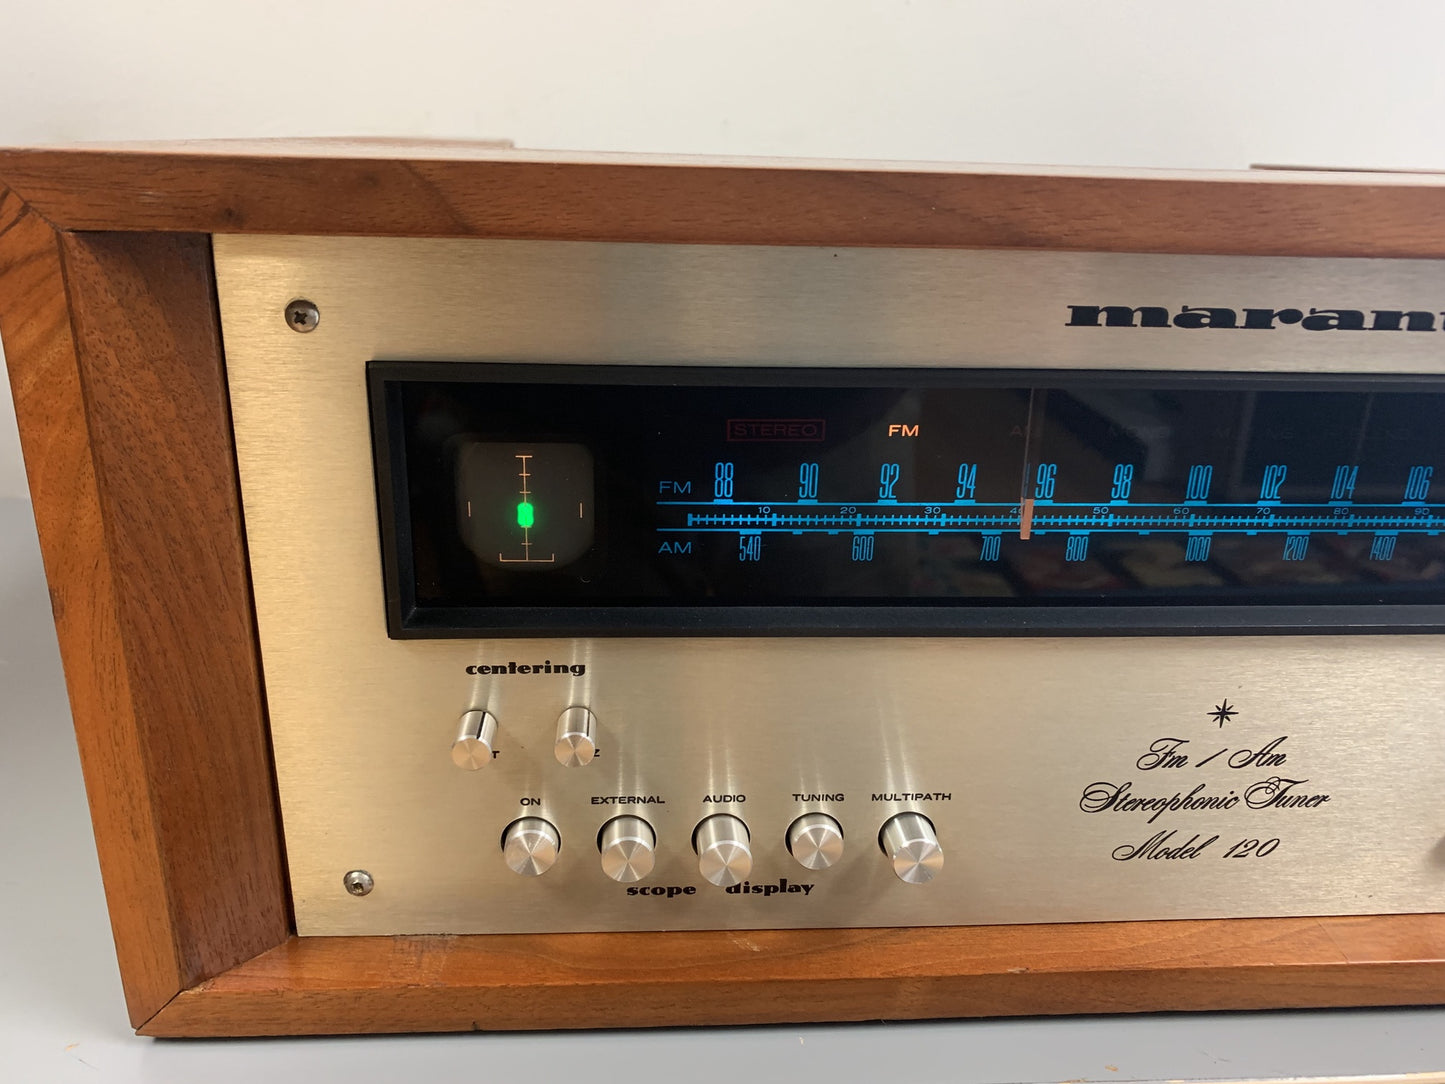 Marantz Model 120 Stereo Tuner * 1973